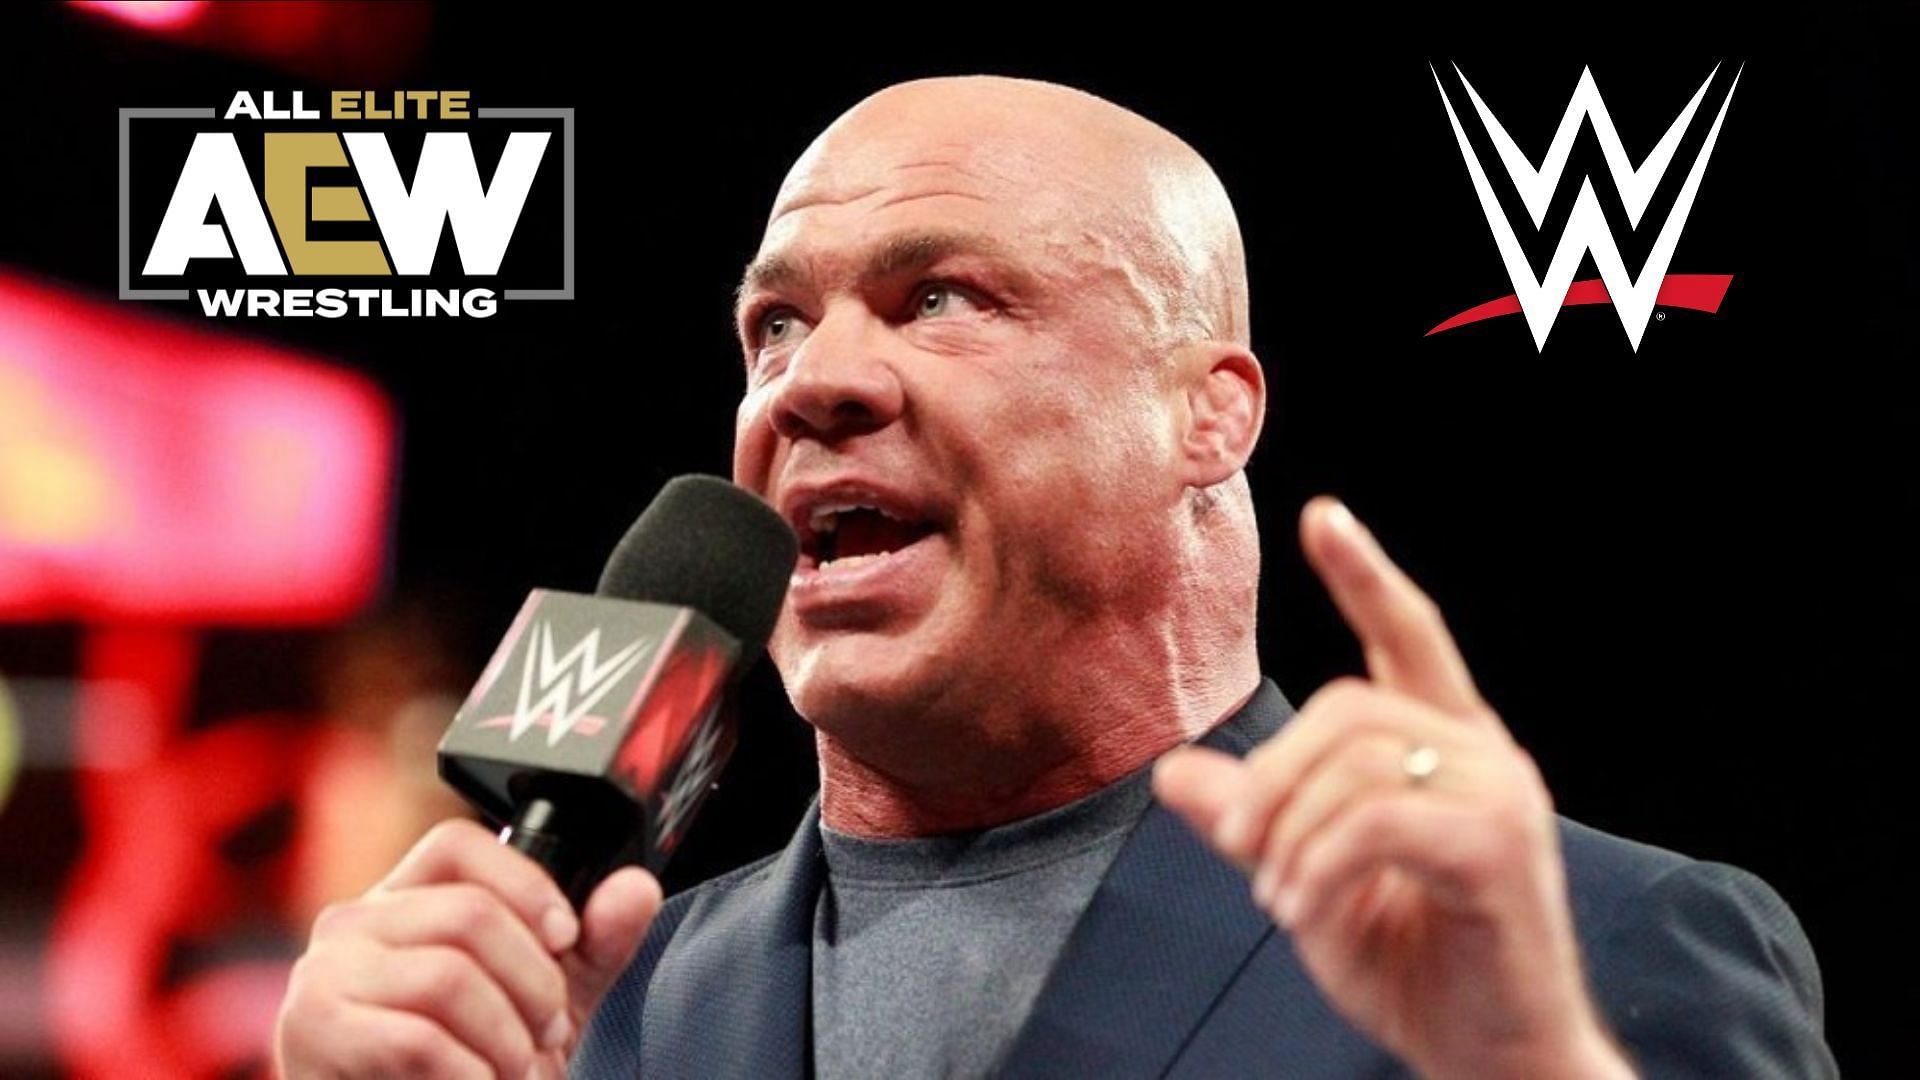 Kurt Angle shares his take on AEW vs. WWE